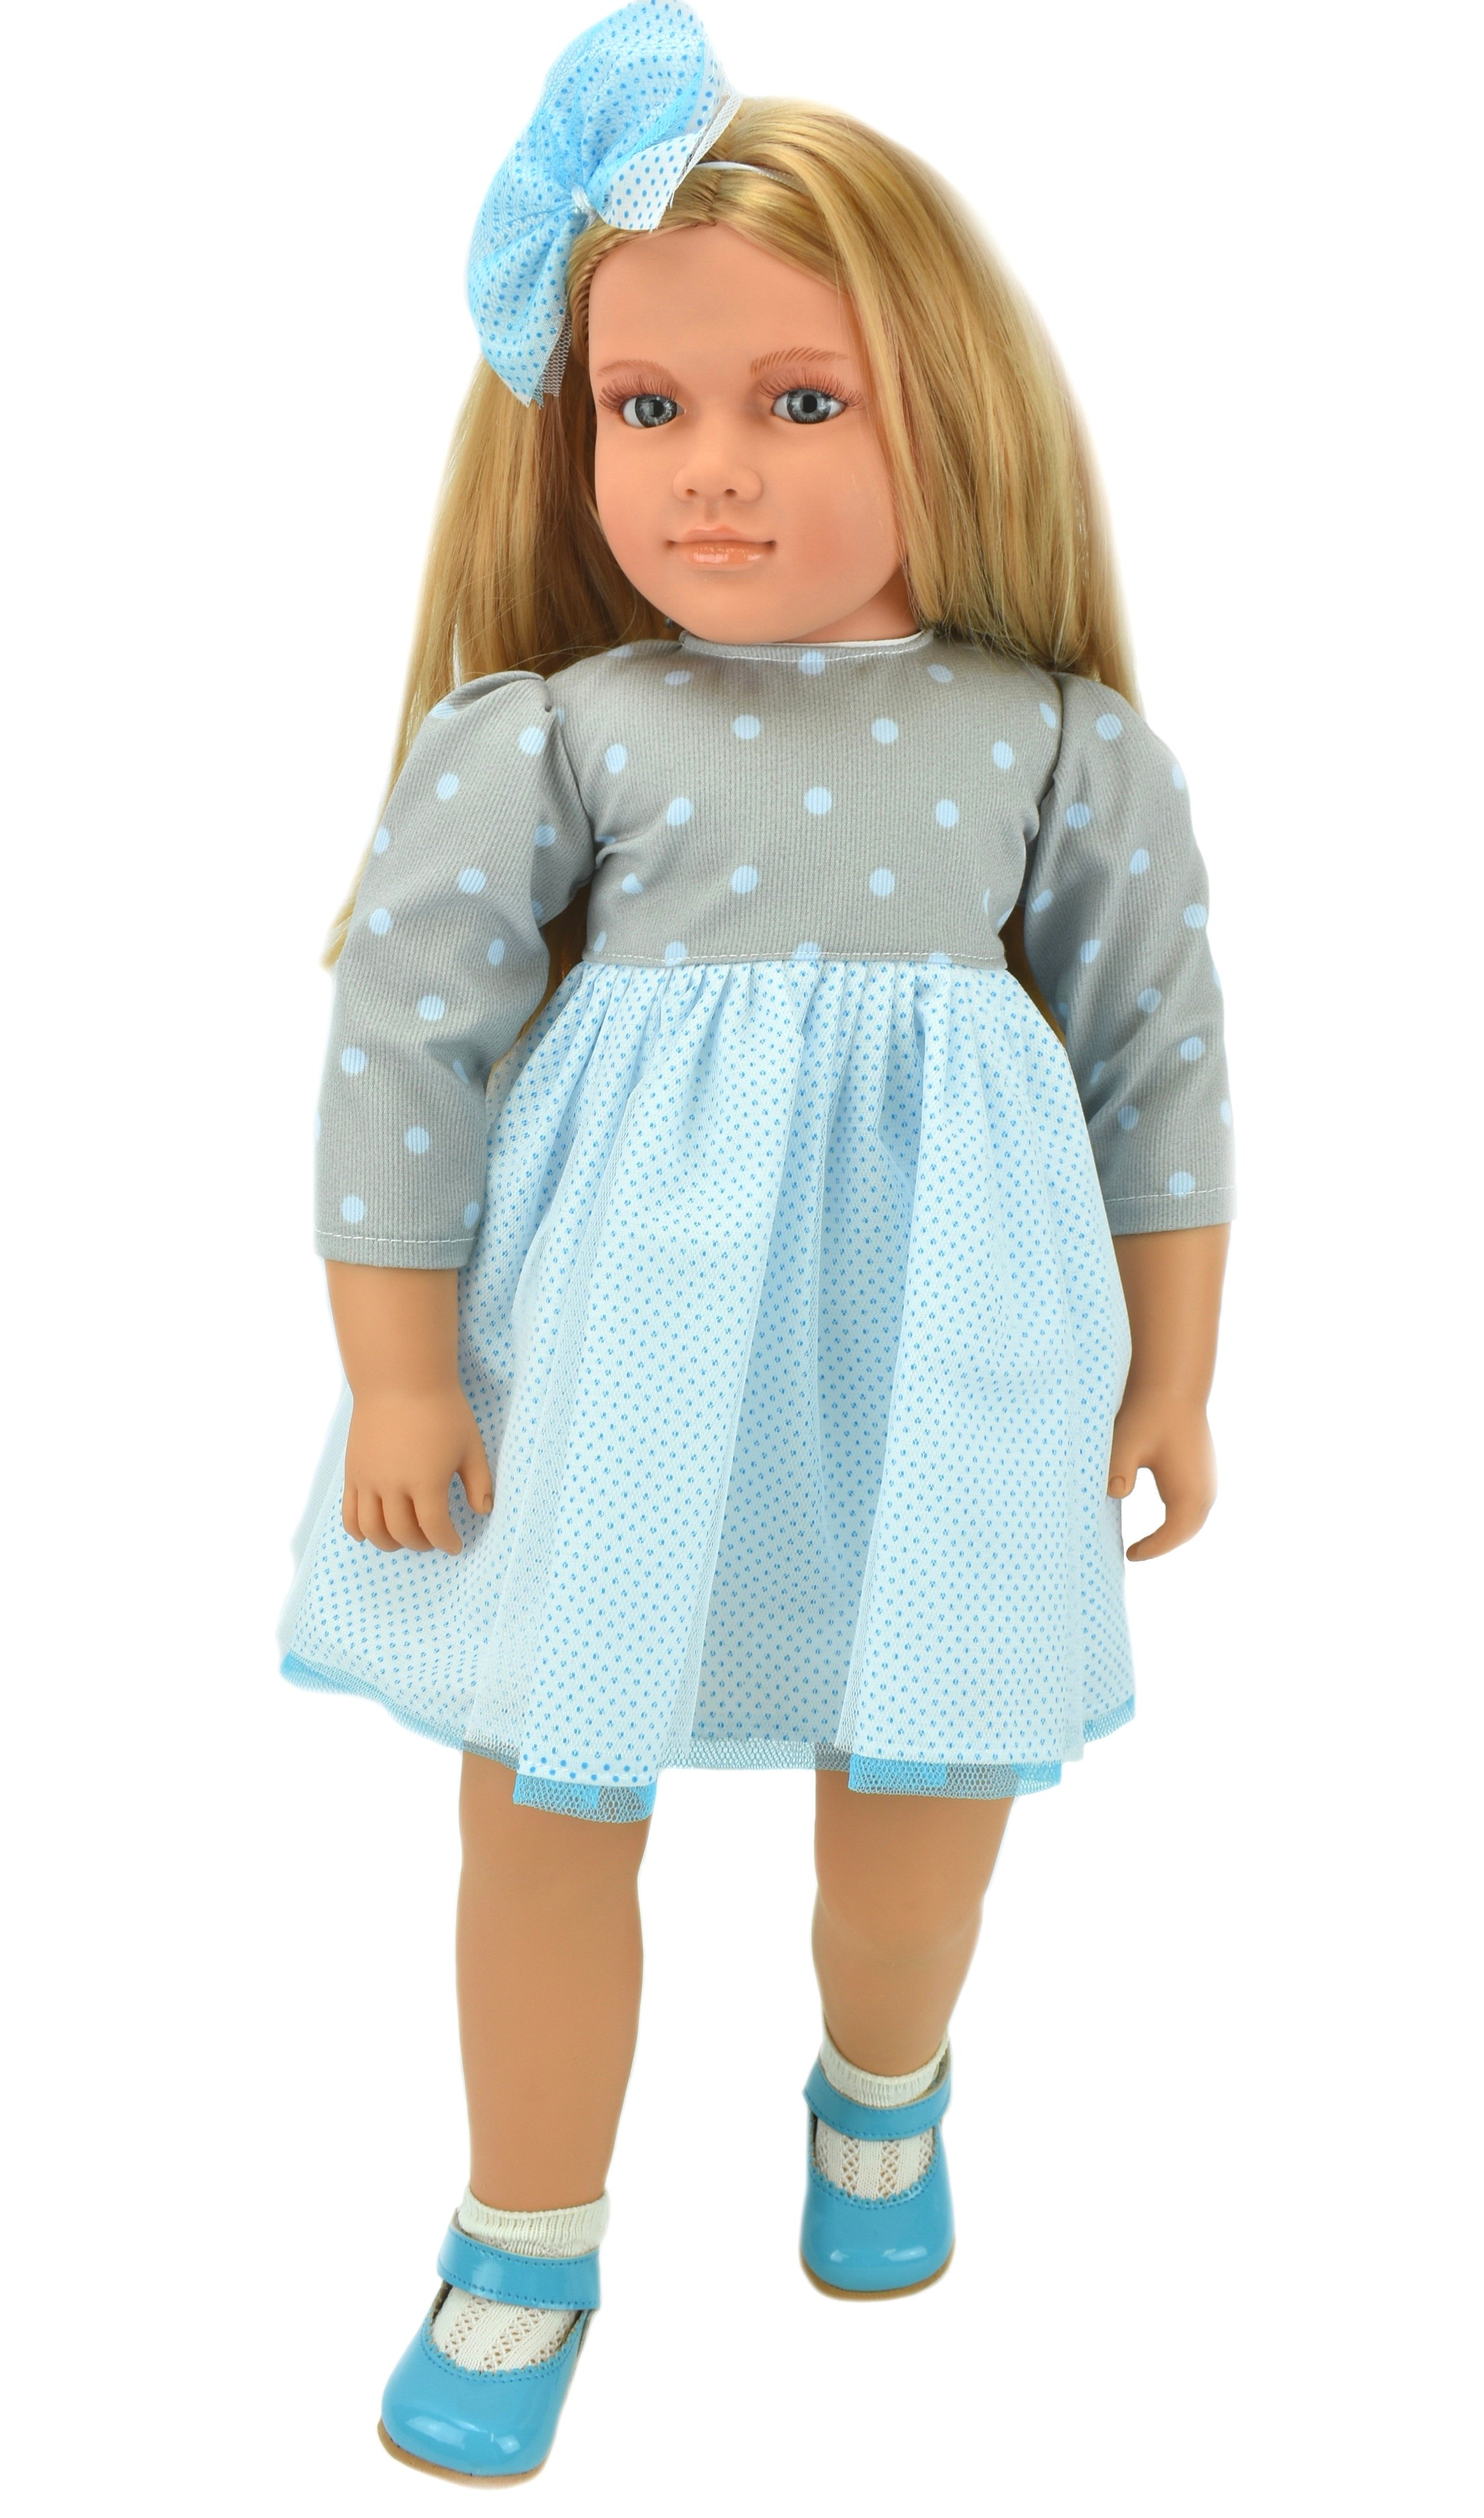 Коллекционная кукла Lamagik Ширли блондинка, в серо-белом платье в горох, 62 см, B9004 lamagik s l коллекционная кукла алика 62 см